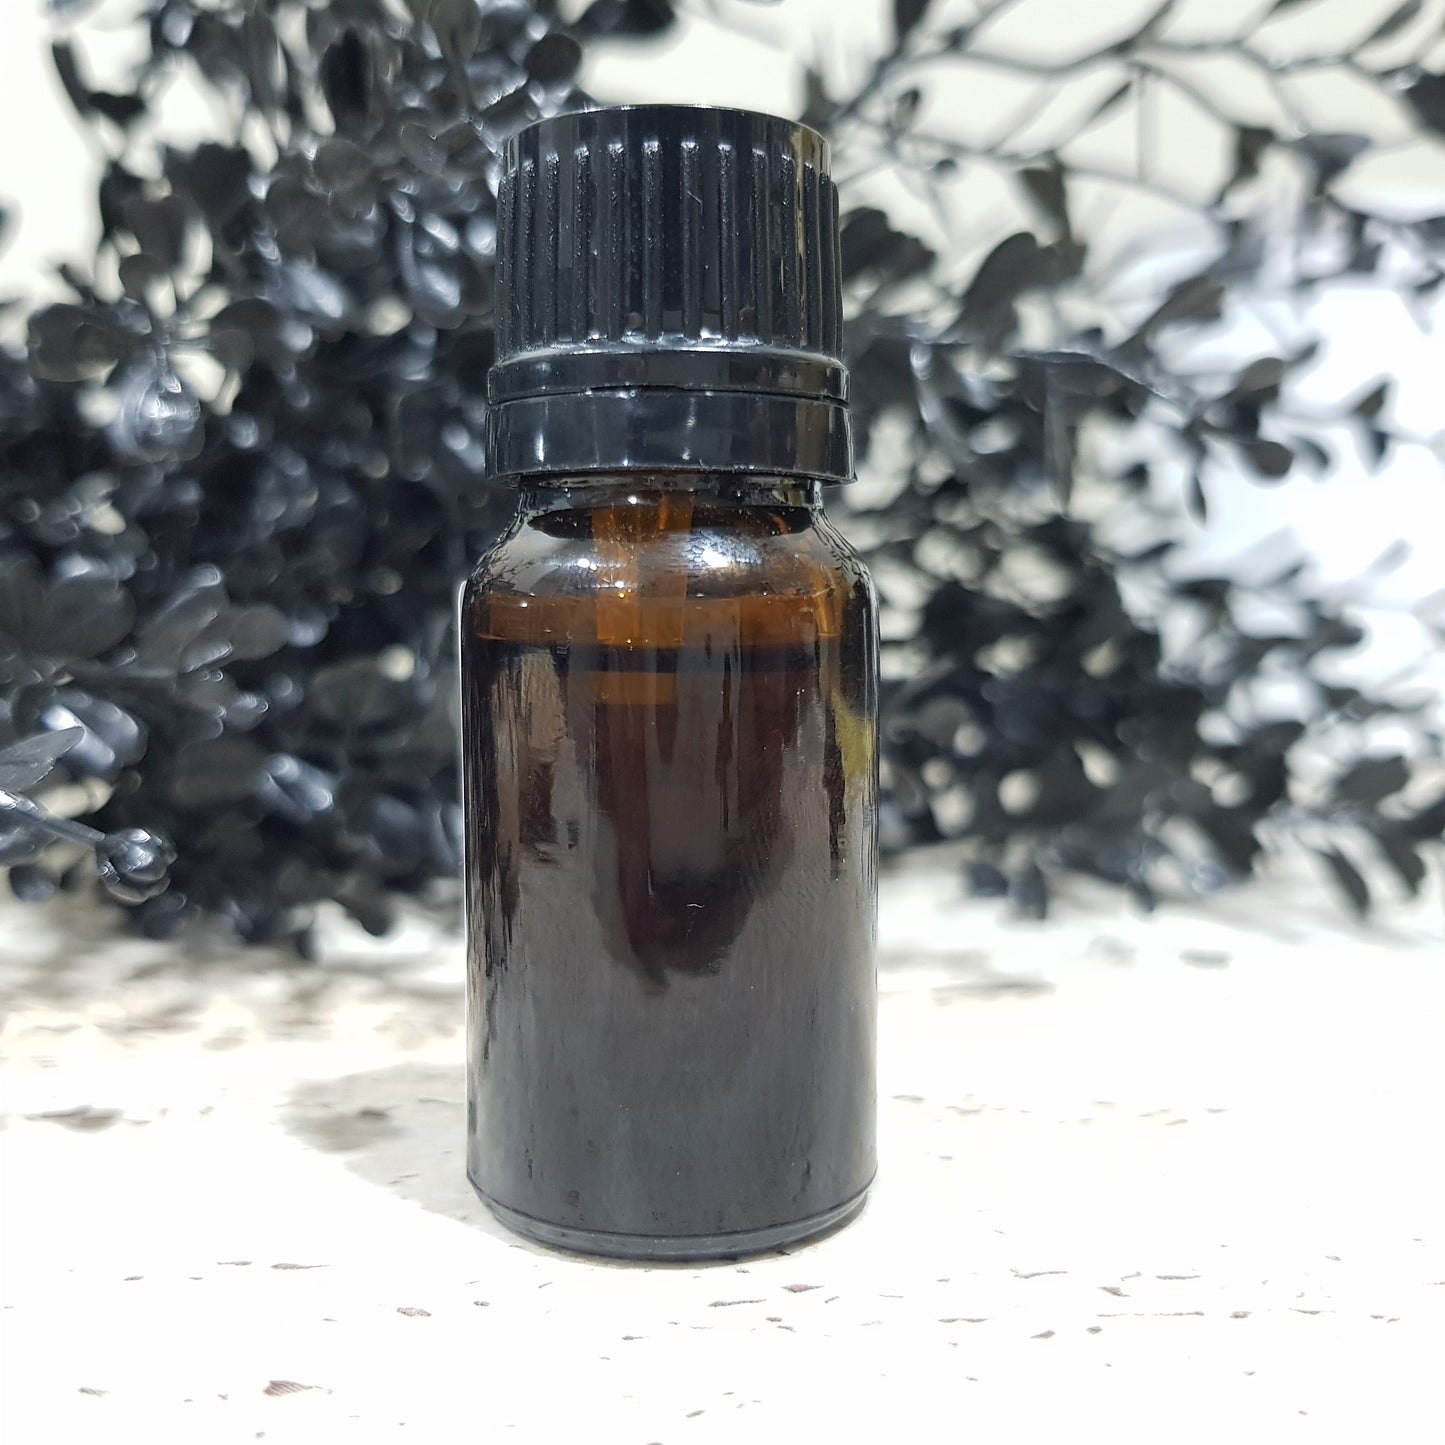 Lavender - 10ml Fragrance Oil